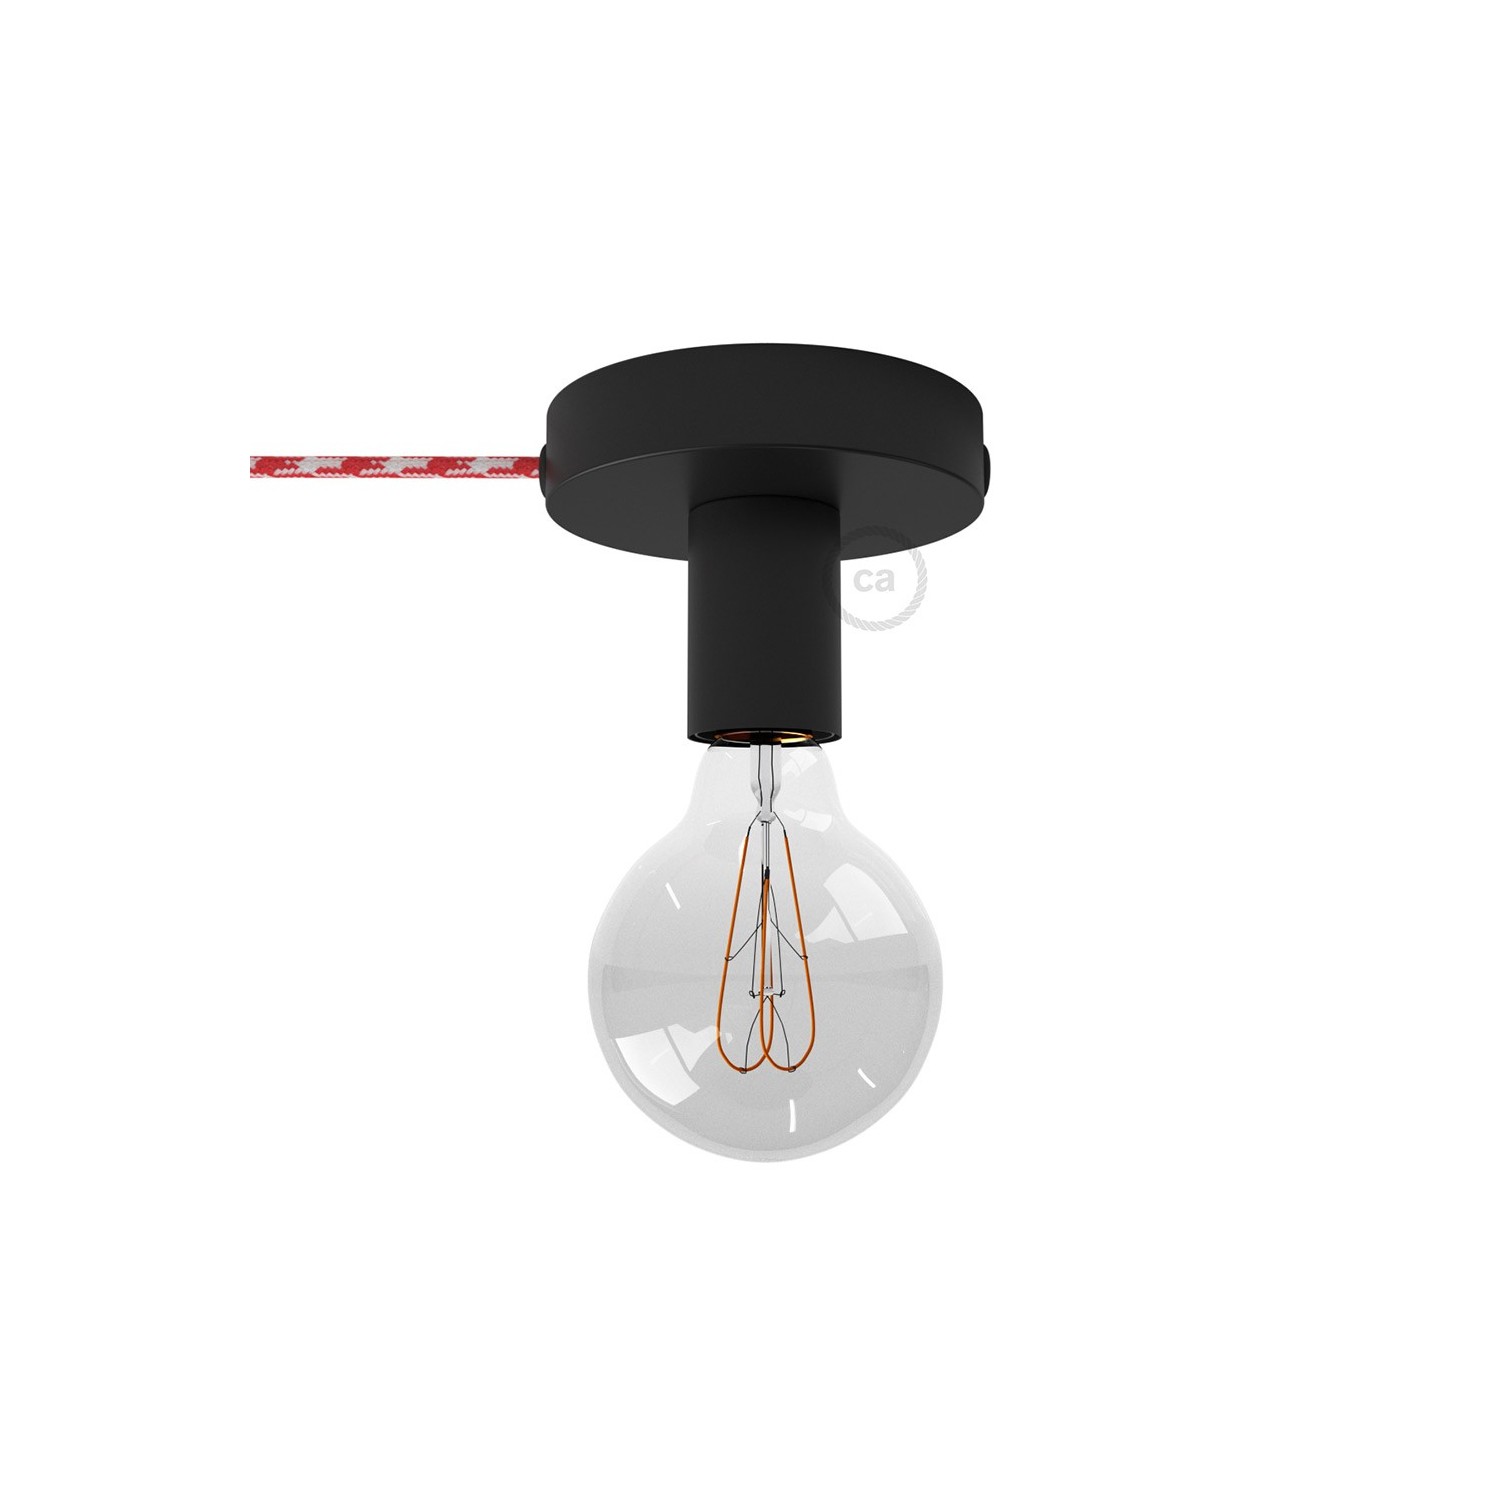 Spostaluce, črna kovinska svetilka s tekstilnim kablom in stranskima izhodoma zanje